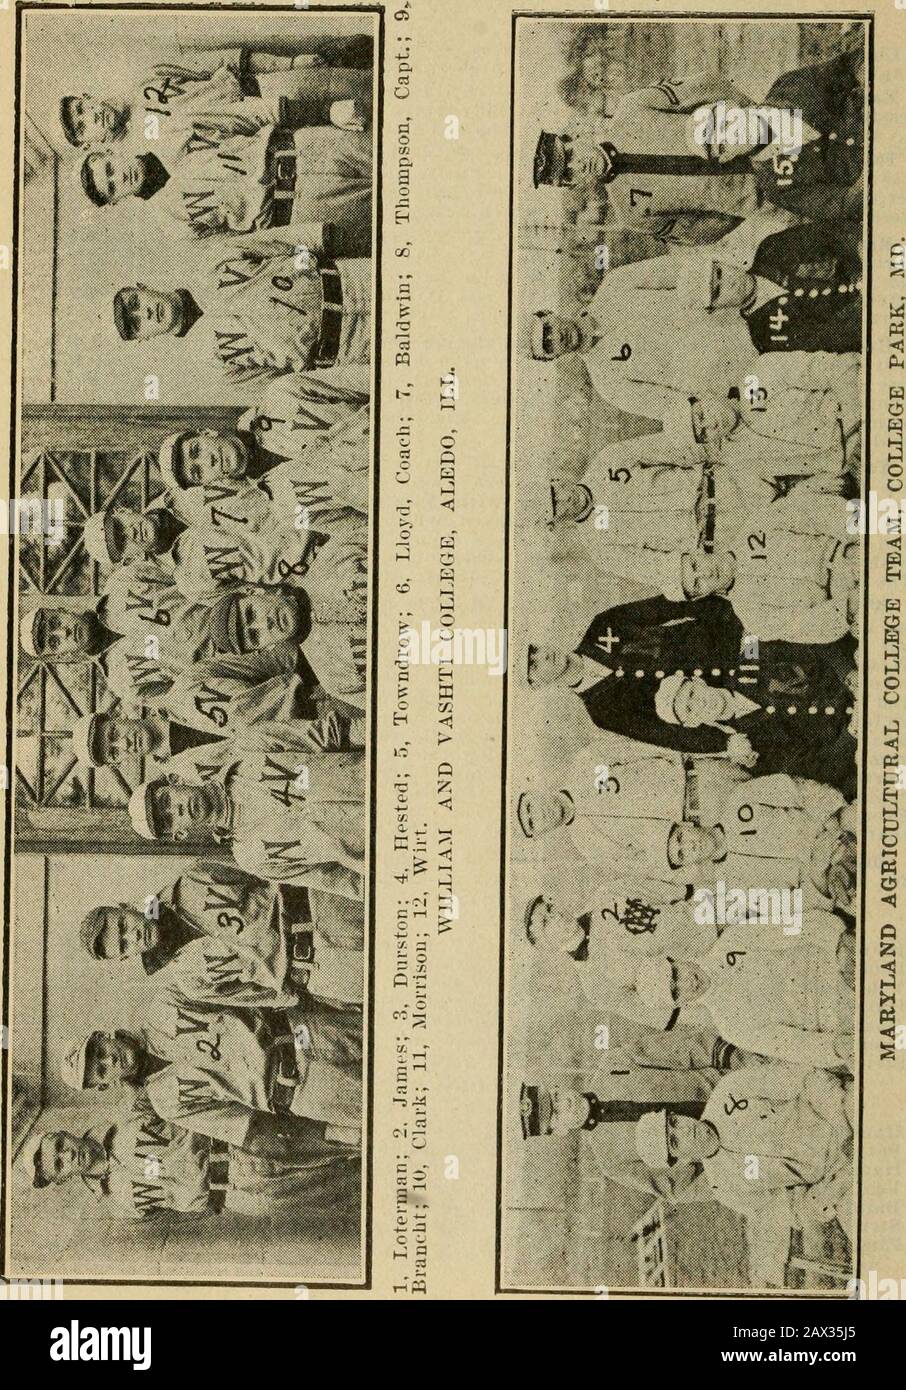 Spalding's Official College base ball annual1911- . rston, catcher; Histed. Pitching; Tommy Thompson, secondo caposquadra andcapitano; James, centratore, e Tondrow tutti giocati palla di alta classe.Ogni membro della squadra sarà tornato nel 1913. E le previsioni sono che gli indossatori del Rosso e Grigio sarà una formidabile aggregazione. University of Iowa.- Zlmmer e Von Lackum- furono le principali batteriaper il team Iowas nel 1912. Le medie per la stagione sono le seguenti: Batting.AB. H. PC. AB. H. PC. Baird 14 5 .358 Zimmer 25 4 .100 Loudin .33 11 .333 Curry 36 5 .138 Von Lackum 35 11 .314 Berry 40 5 .125 Han Foto Stock